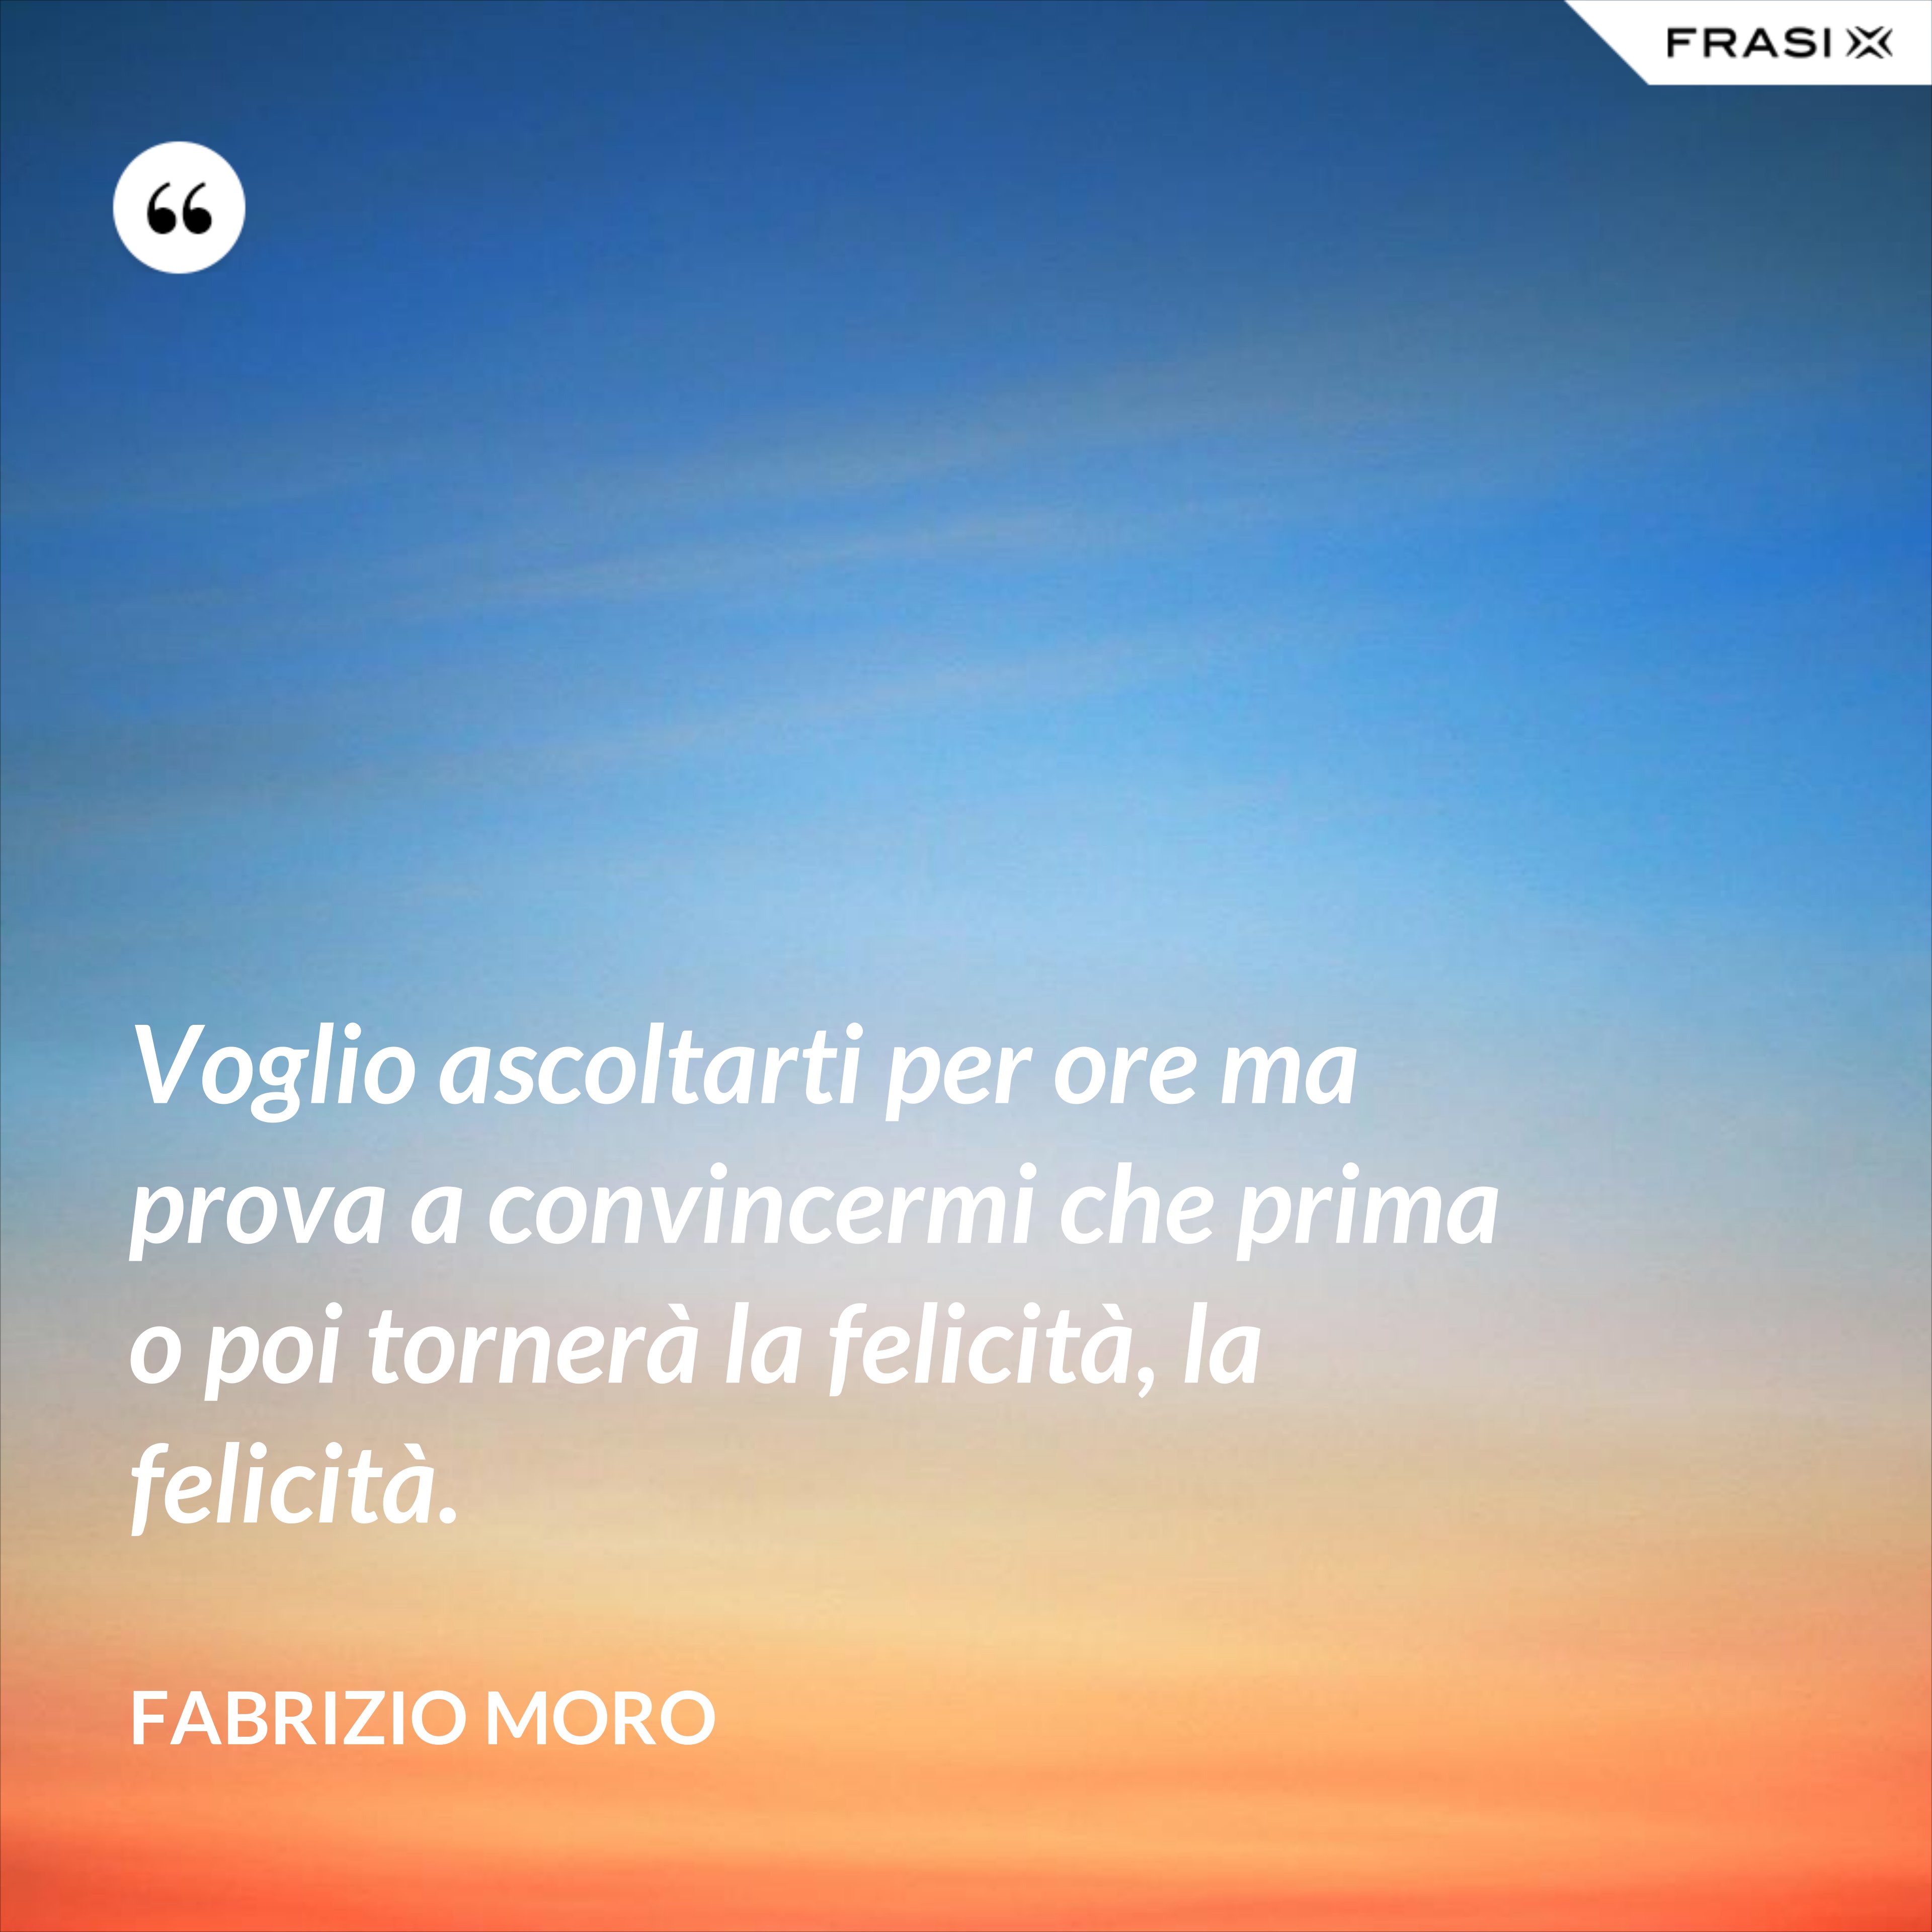 Voglio ascoltarti per ore ma prova a convincermi che prima o poi tornerà la felicità, la felicità. - Fabrizio Moro